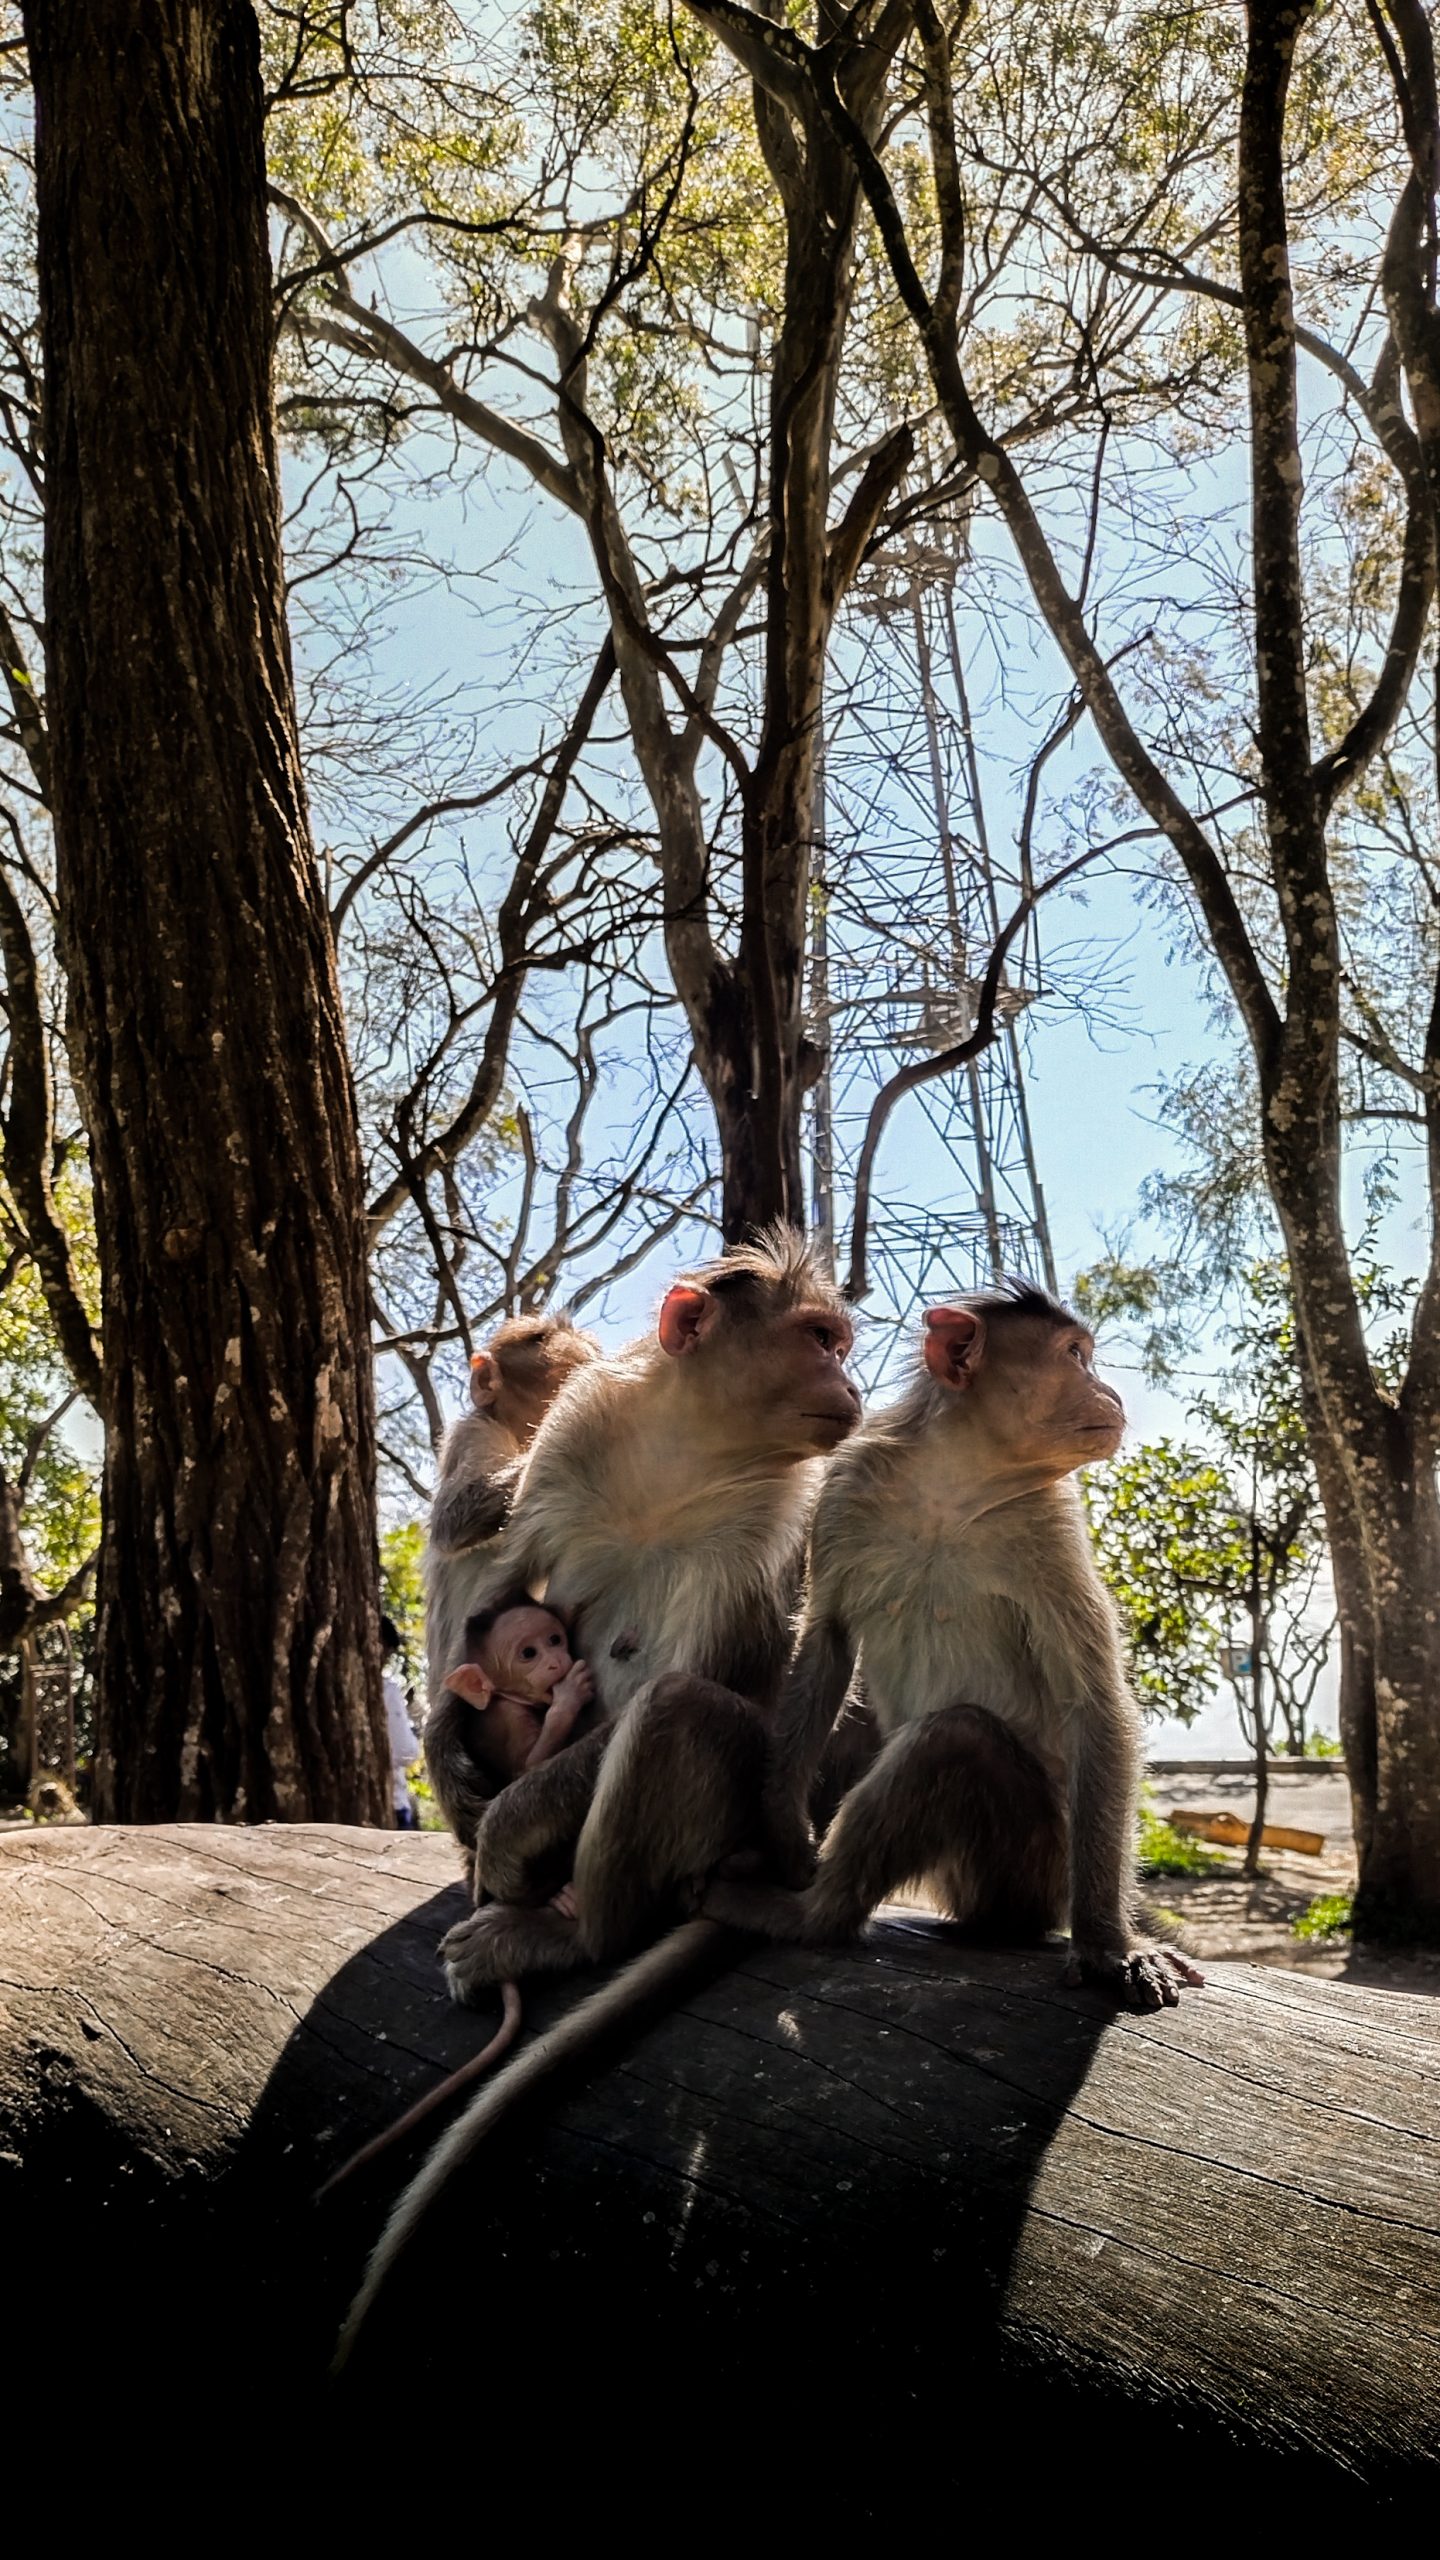 Monkeys sitting on tree trunk